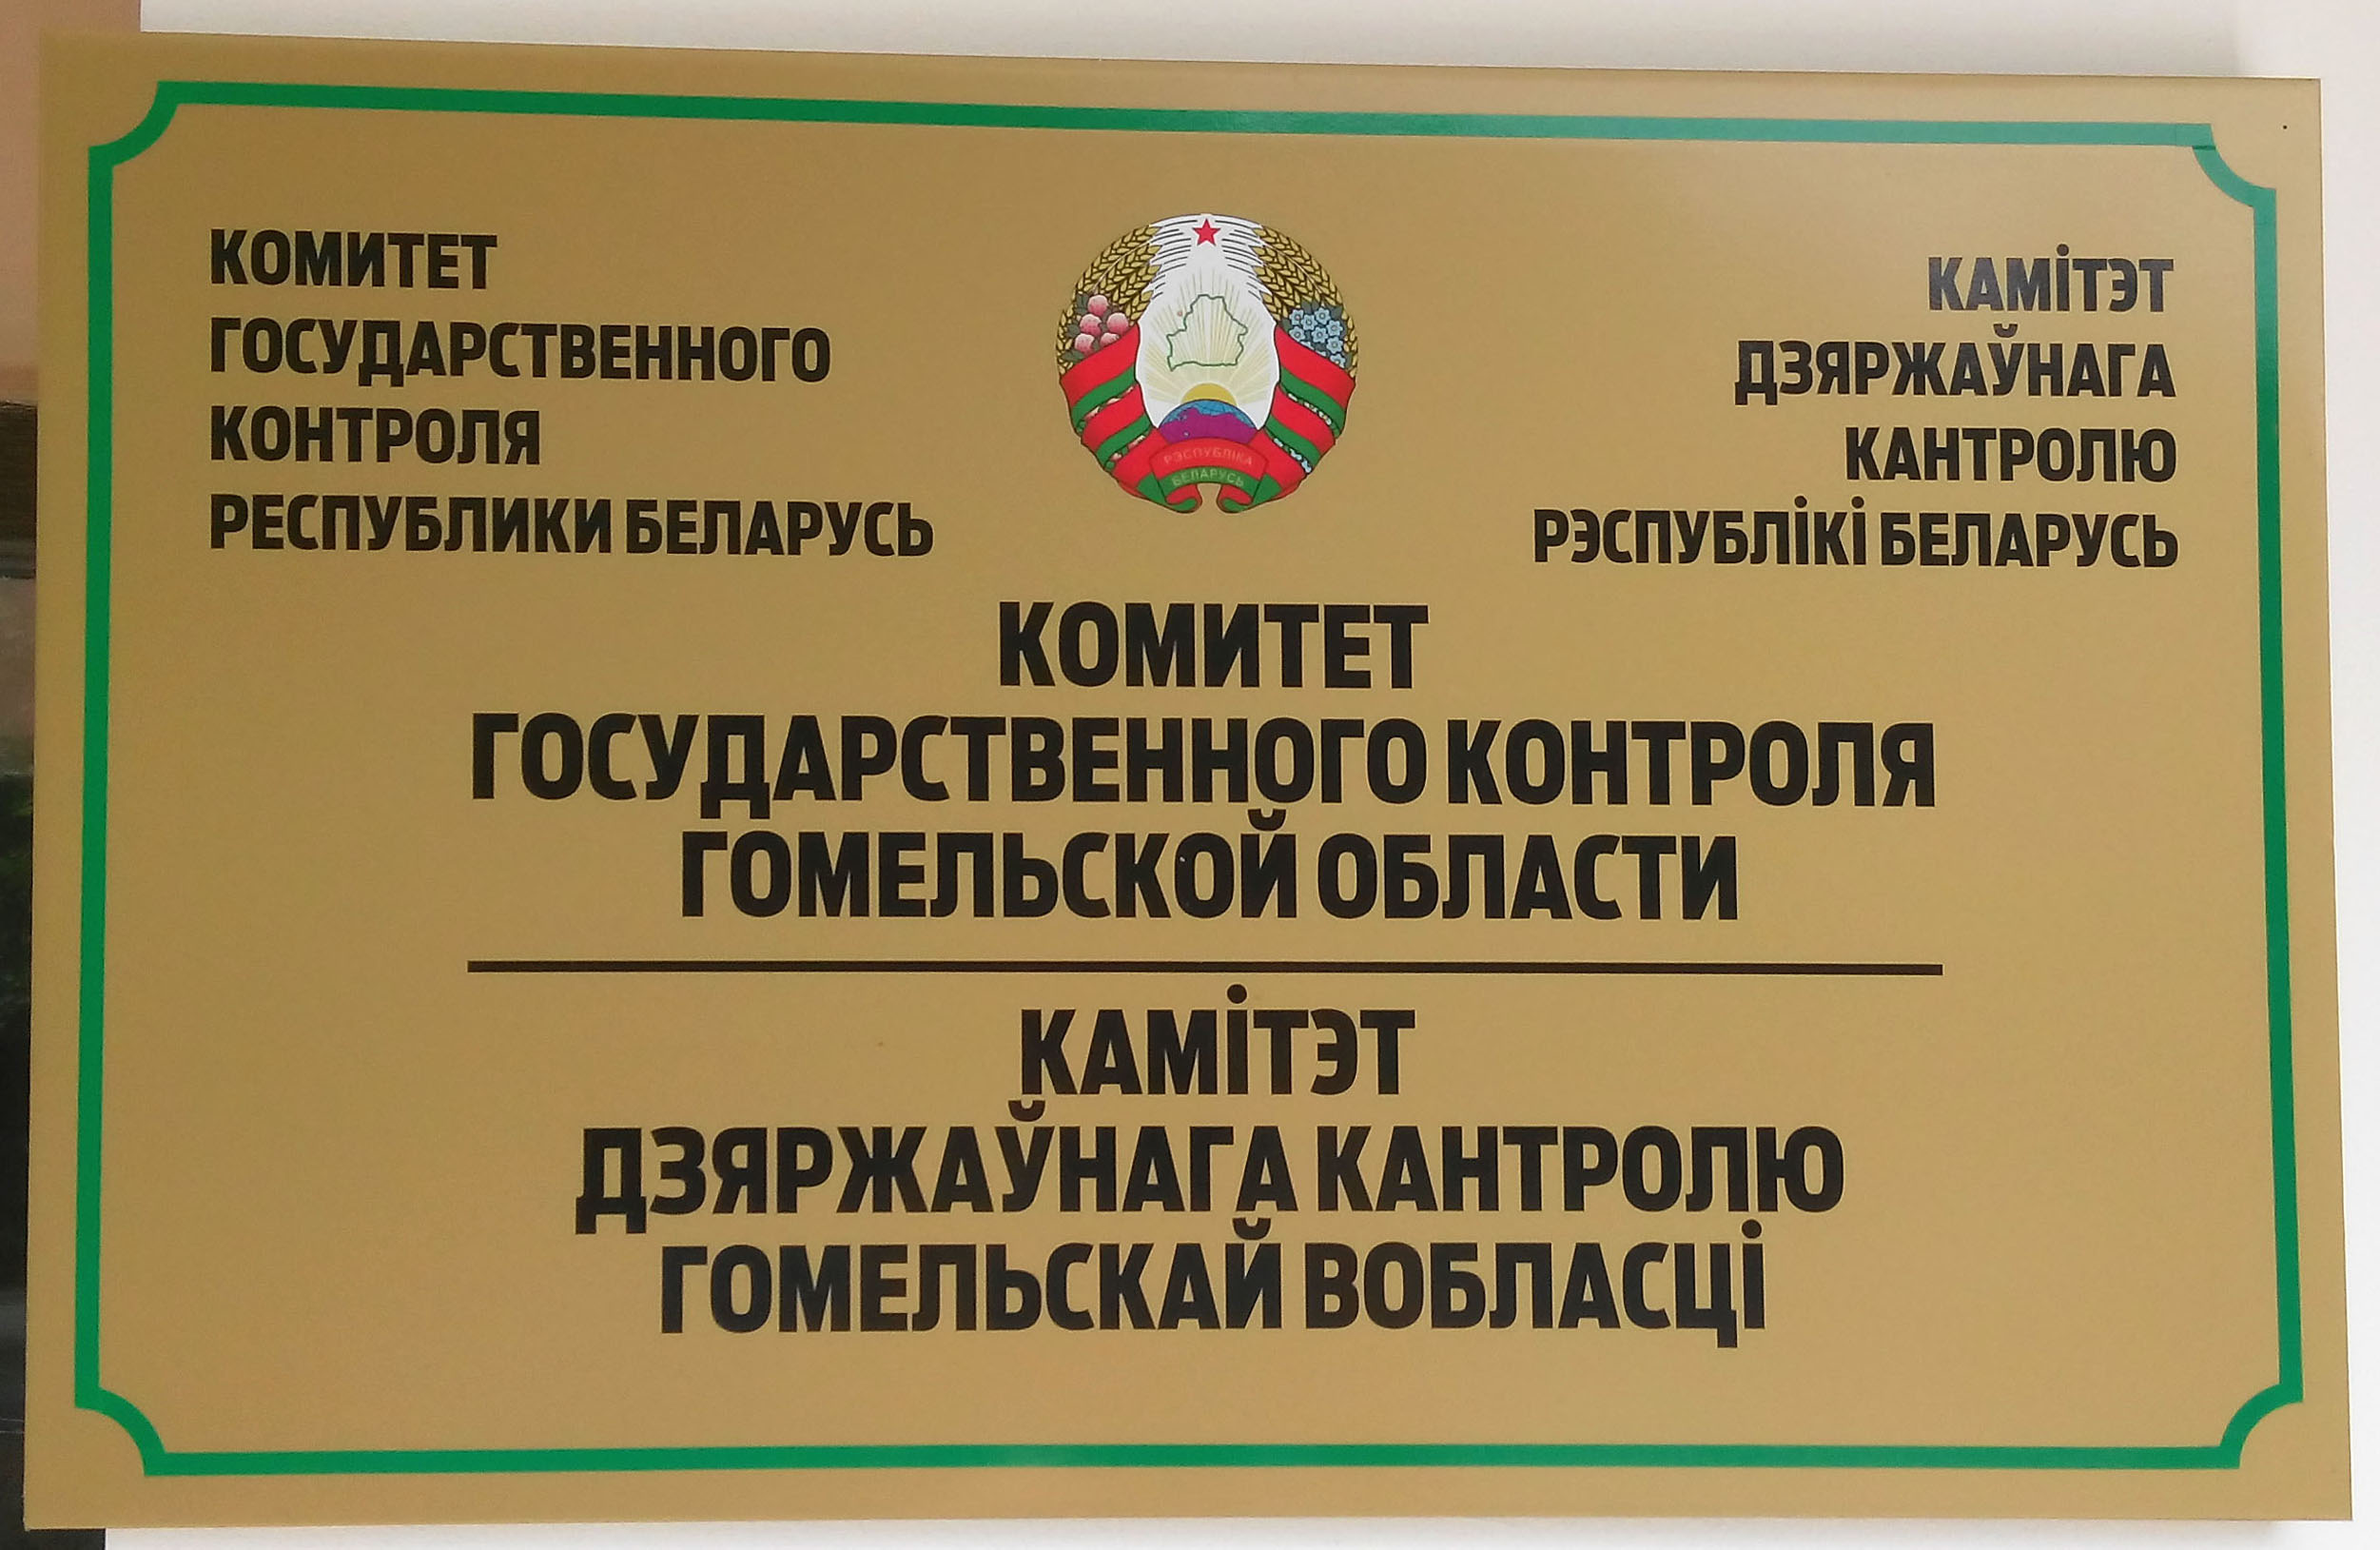 26 мая состоится прямая линия с председателем Комитета государственного контроля Гомельской области